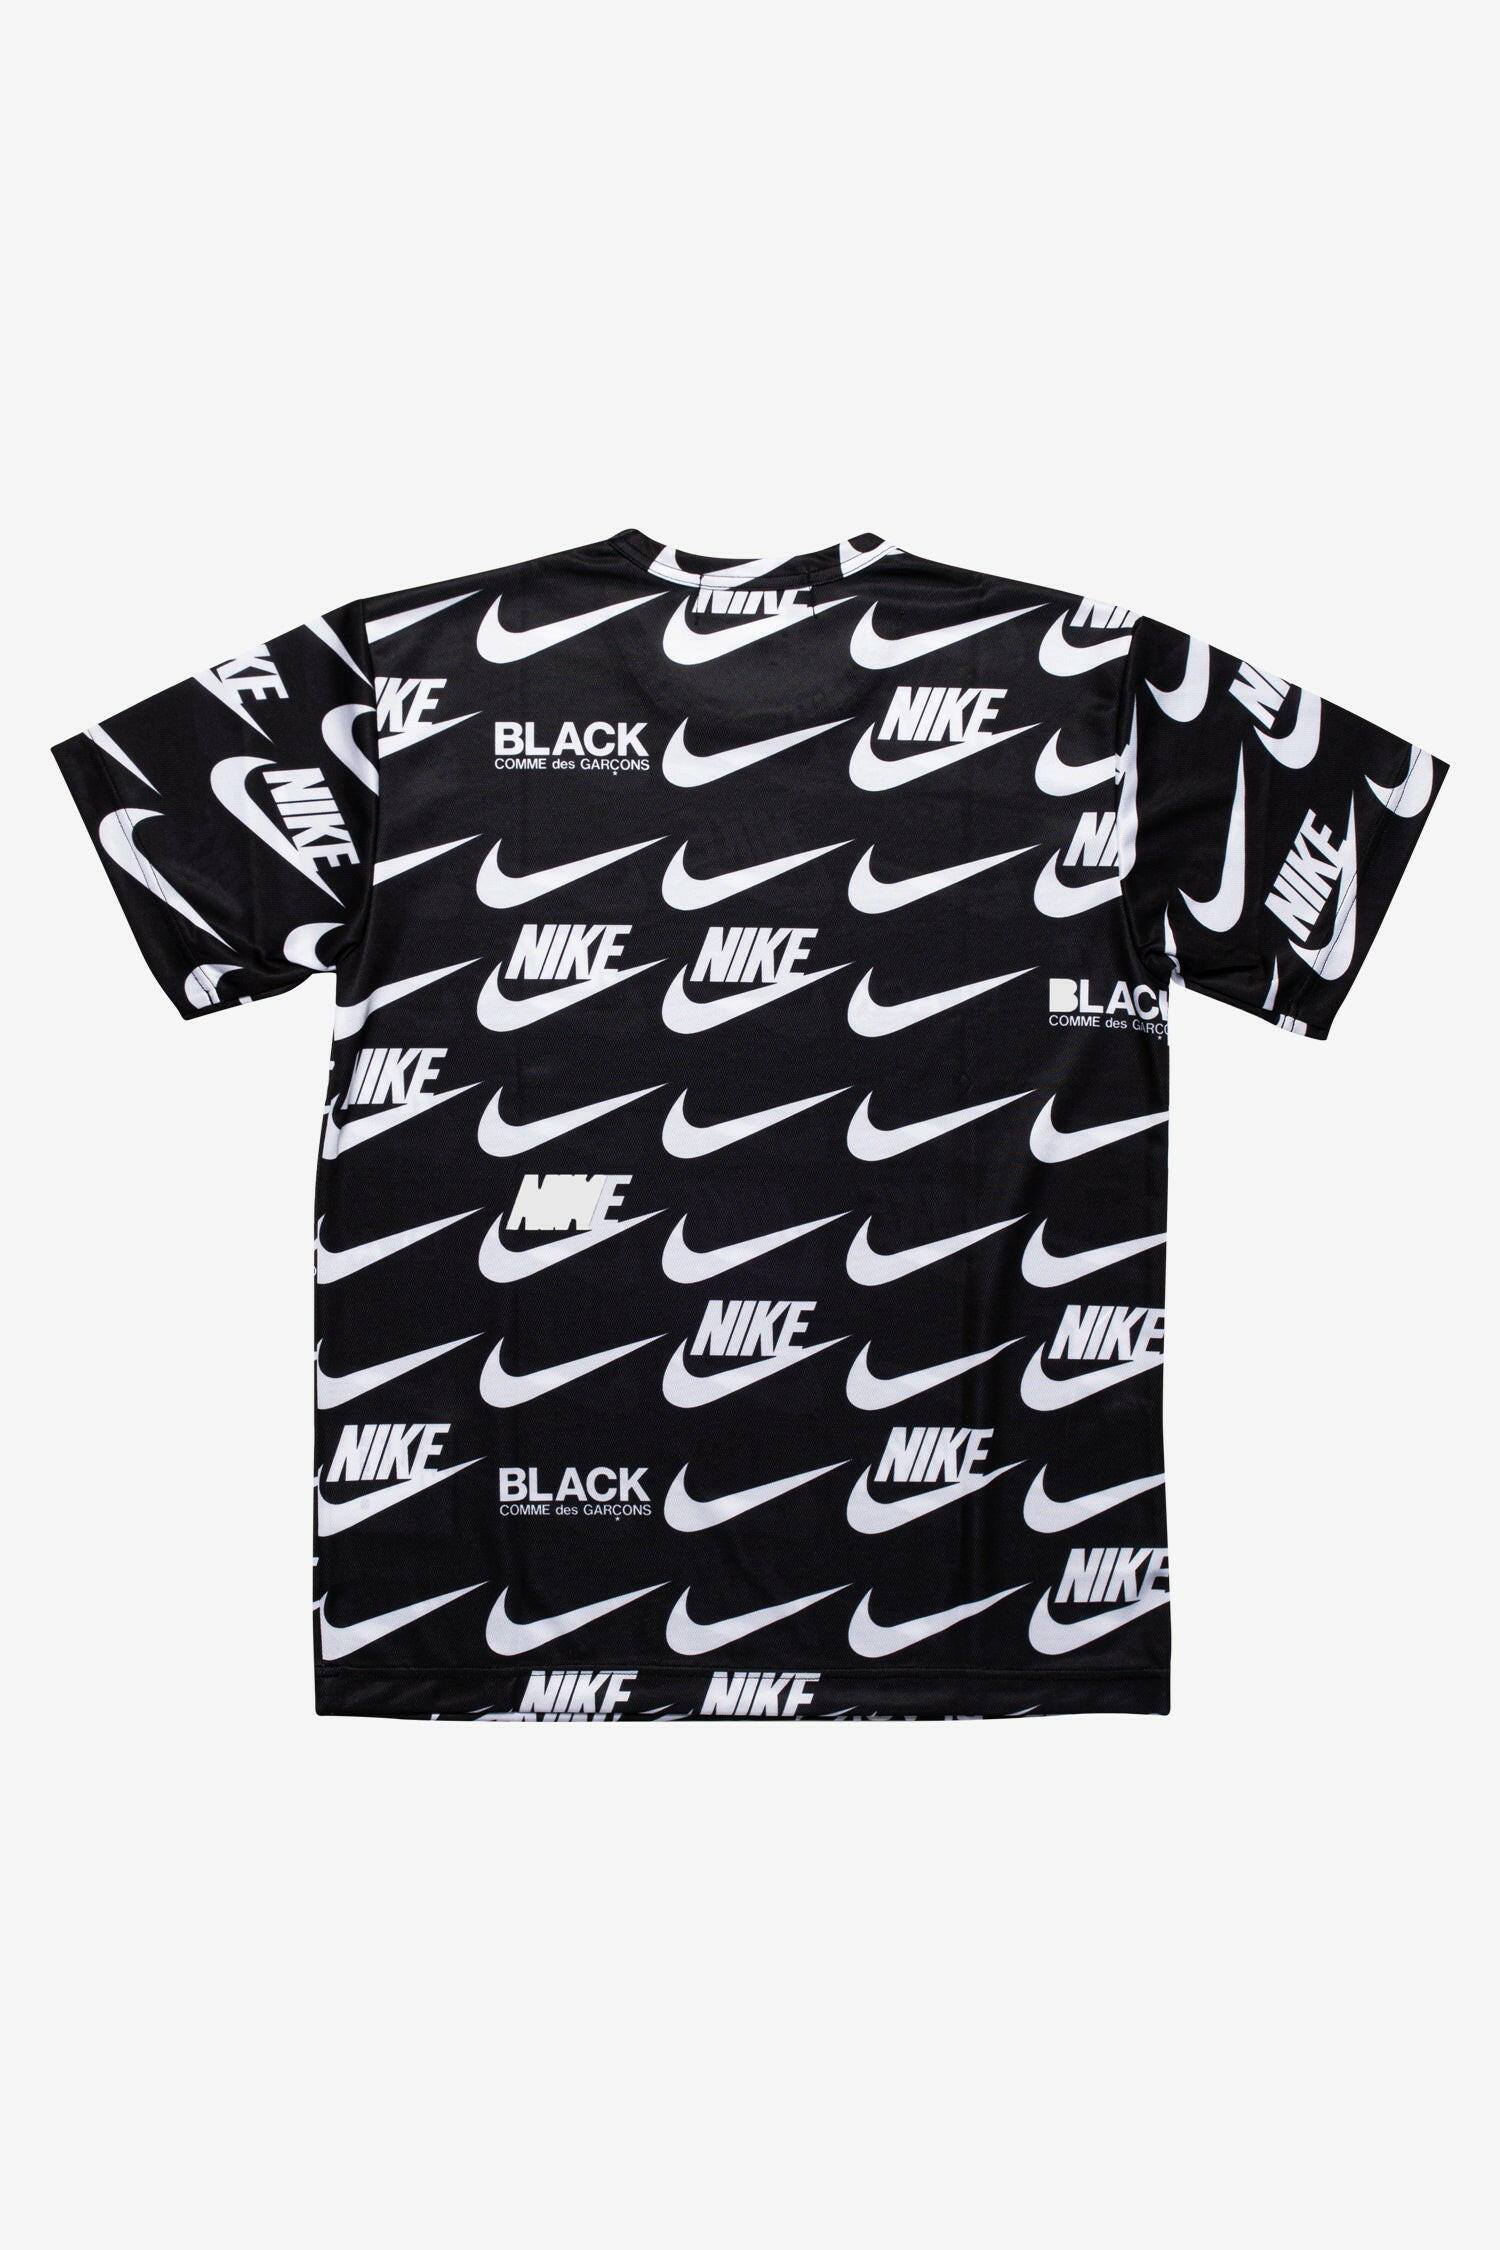 Selectshop FRAME - COMME DES GARCONS BLACK Nike Swoosh Jersey T-shirt T-Shirt Dubai